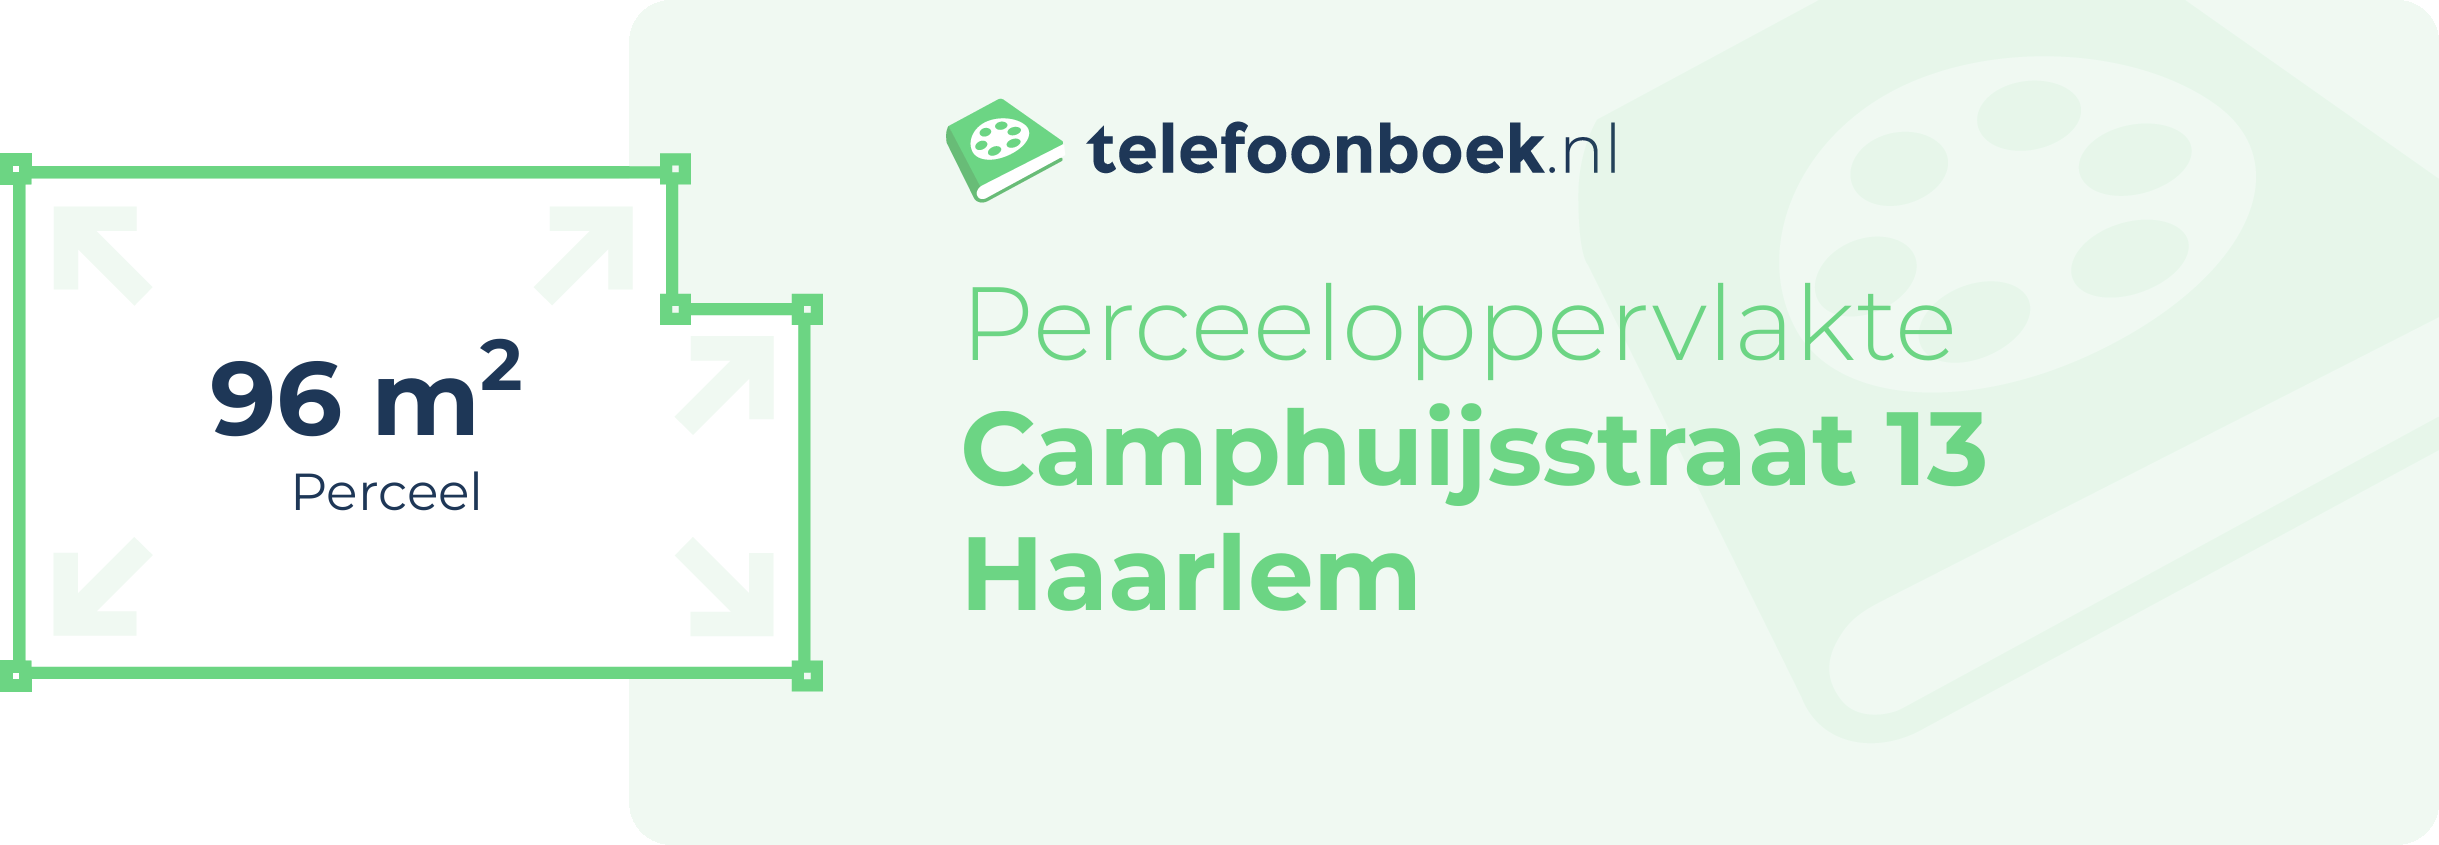 Perceeloppervlakte Camphuijsstraat 13 Haarlem